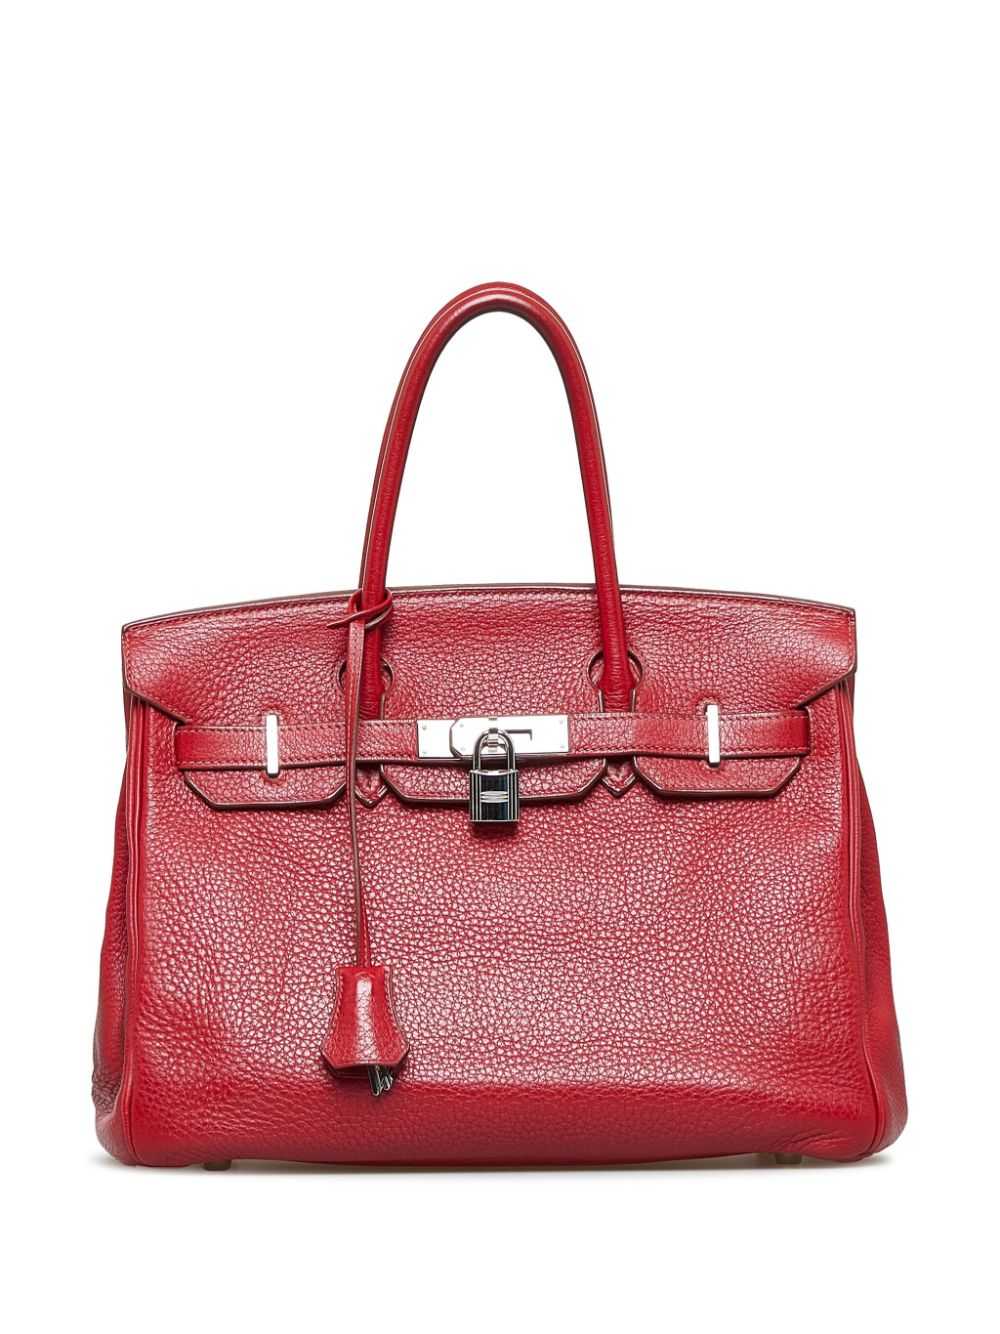 Hermès Pre-Owned pre-owned Birkin 30 handbag - Red - image 1